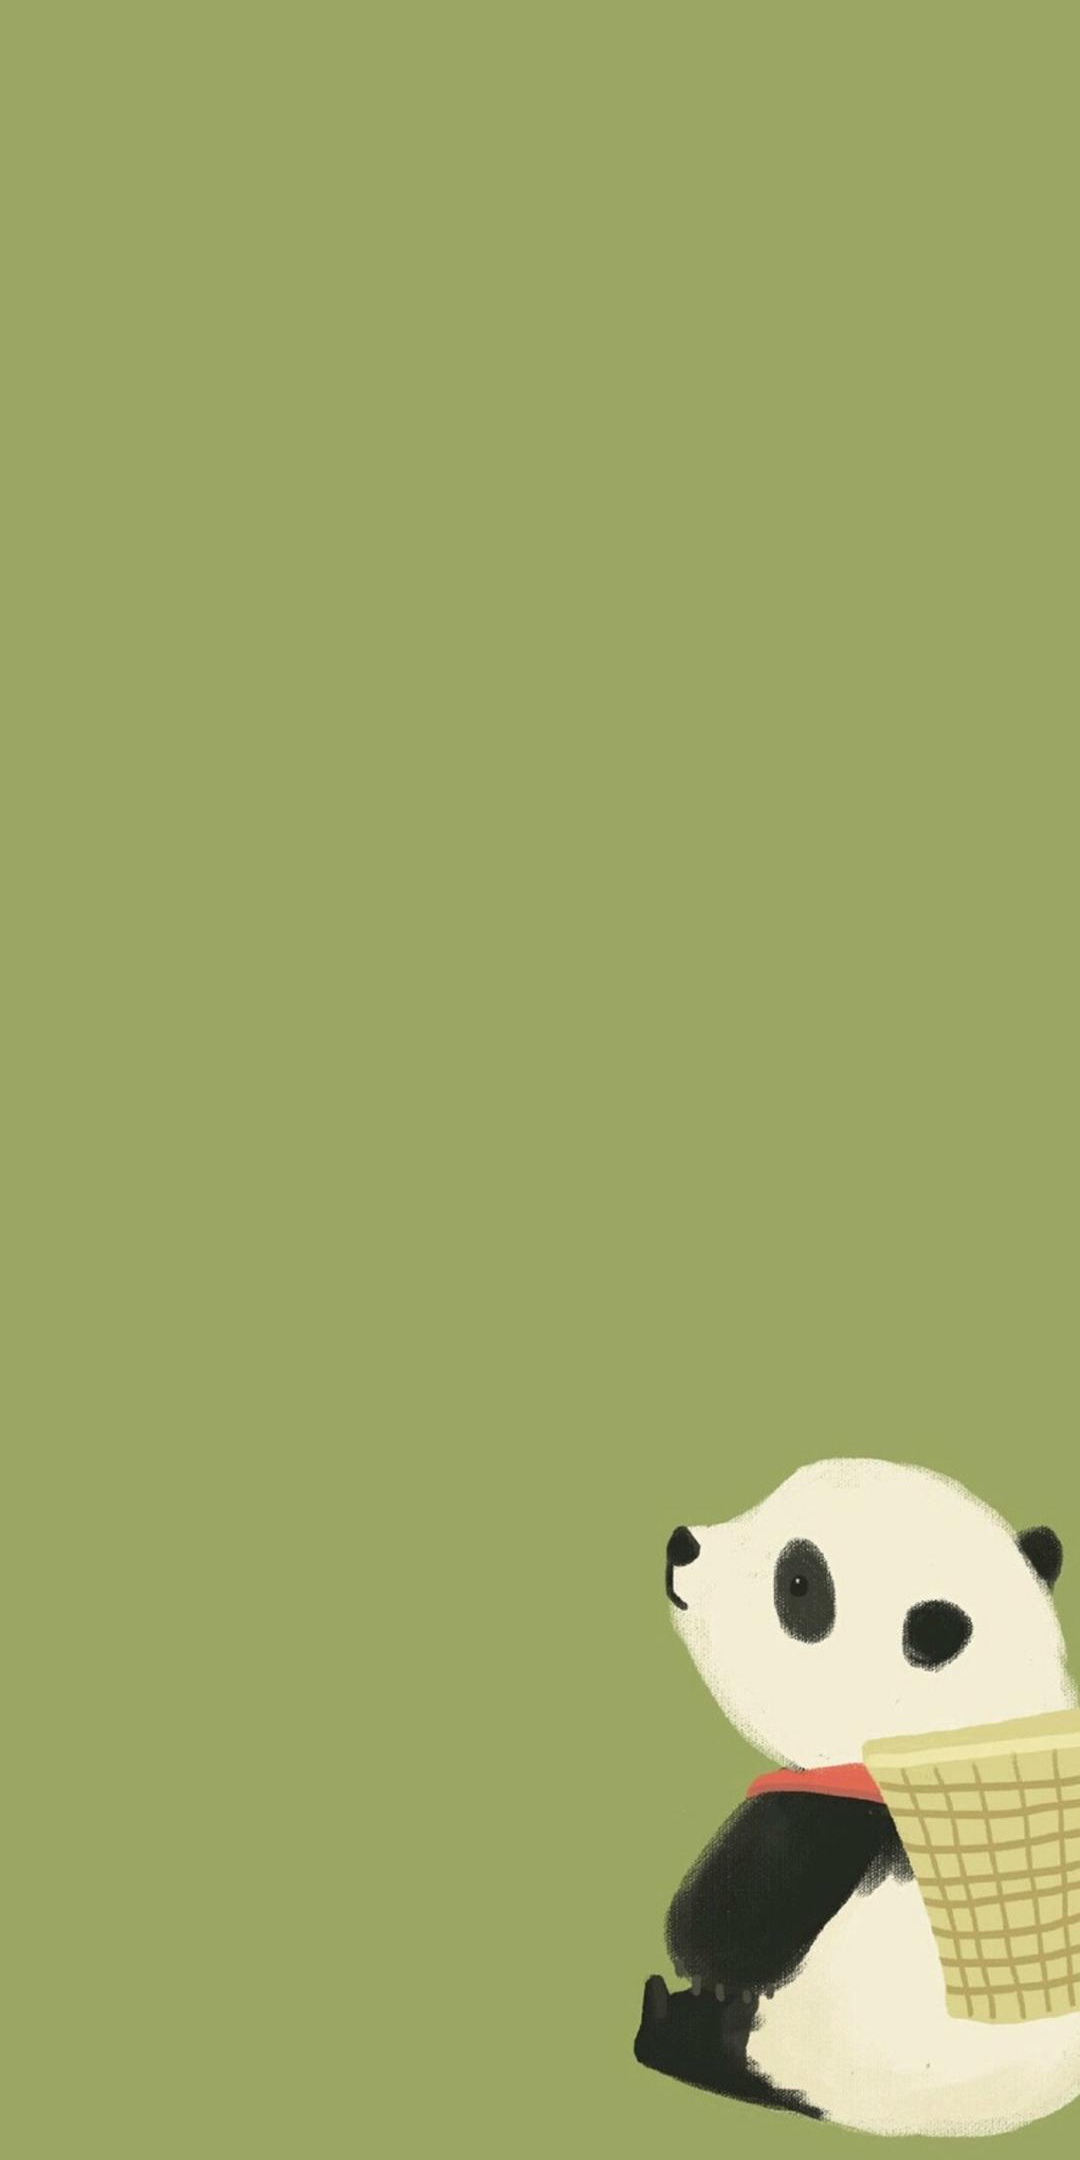 背着竹篓的可爱熊猫插画